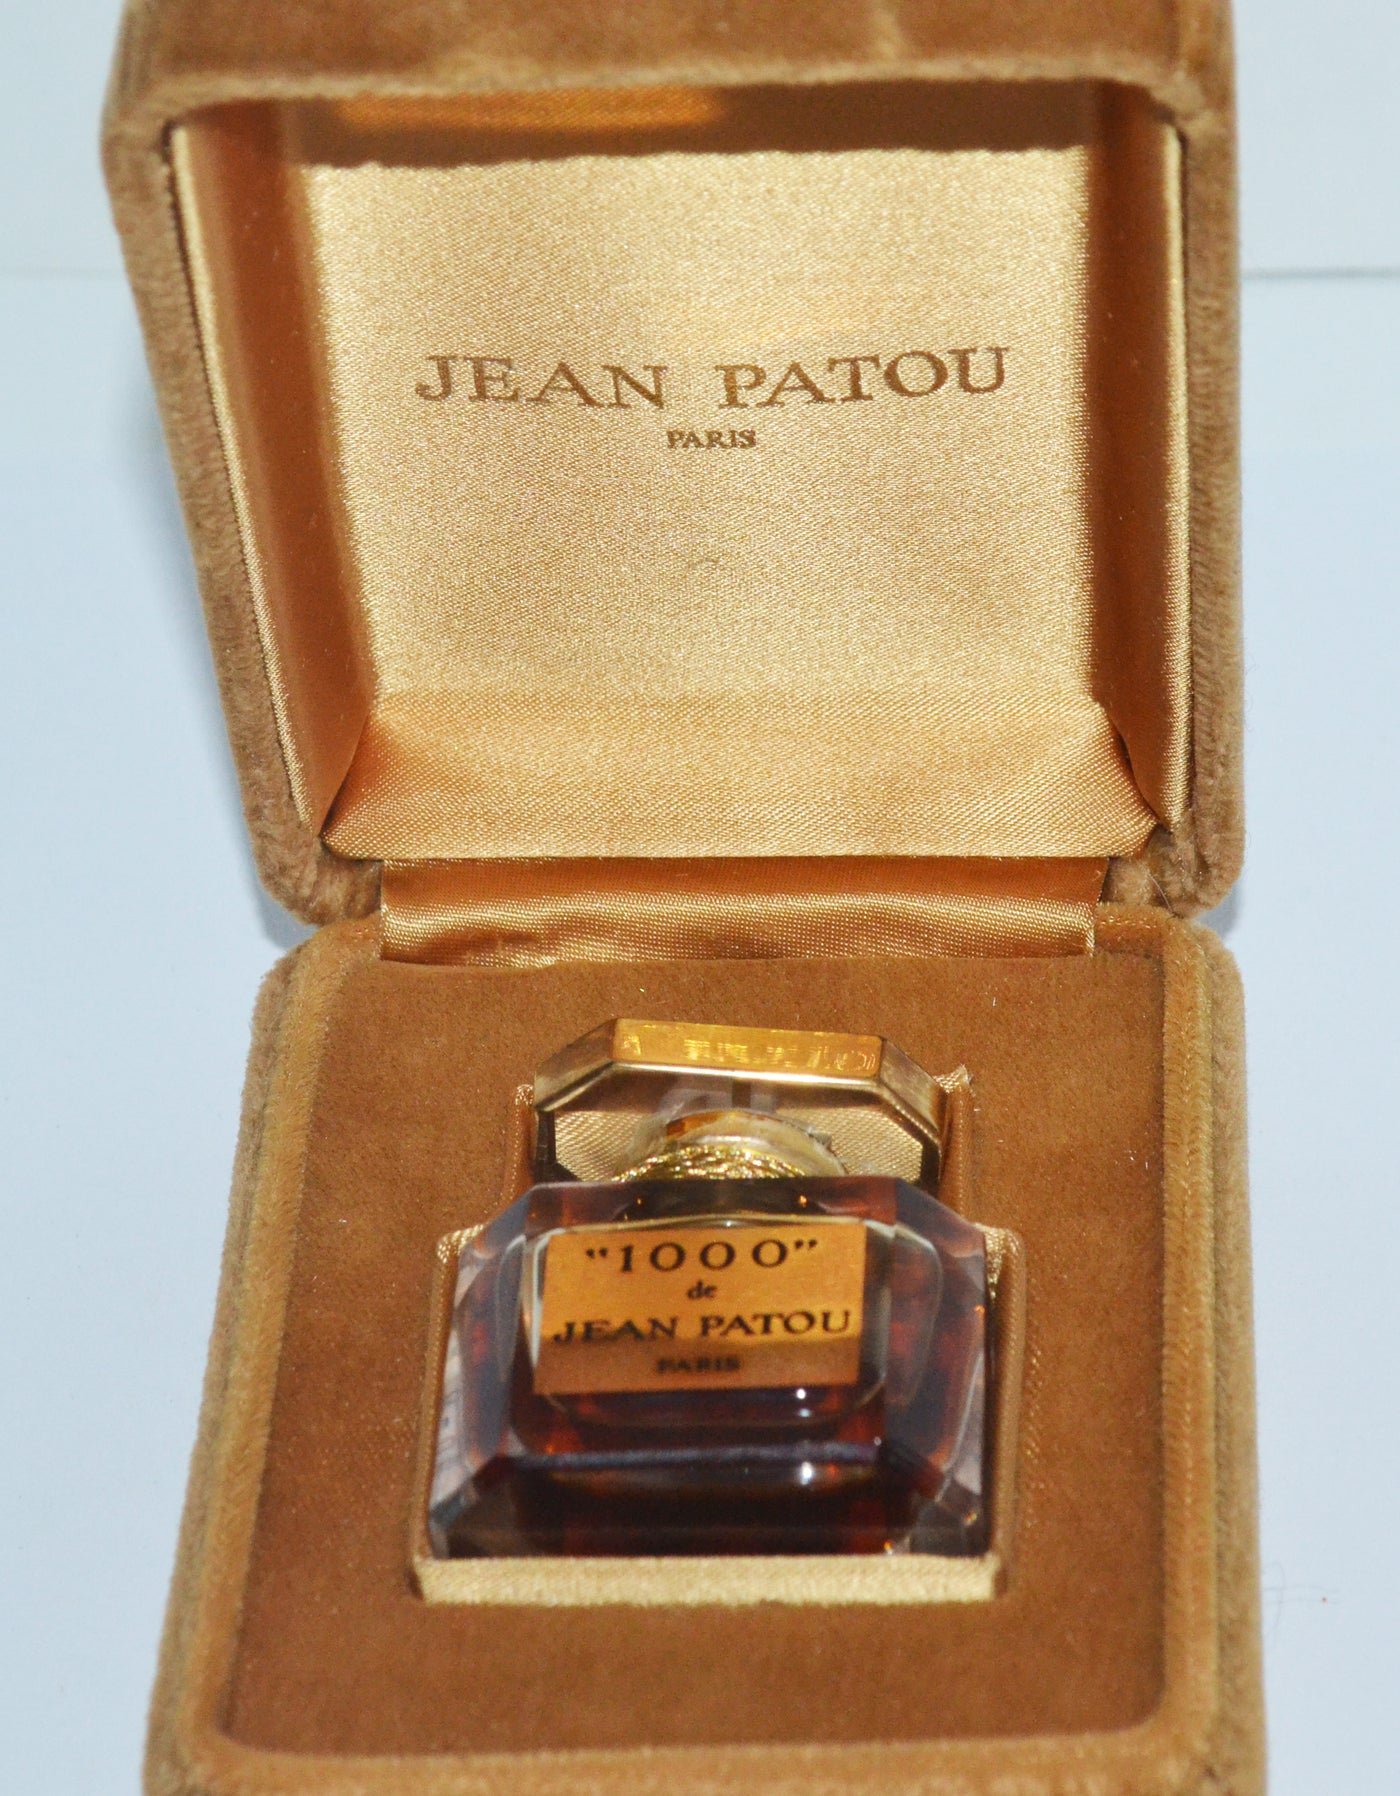 Vintage 1000 Parfum Baccarat Bottle By Jean Patou